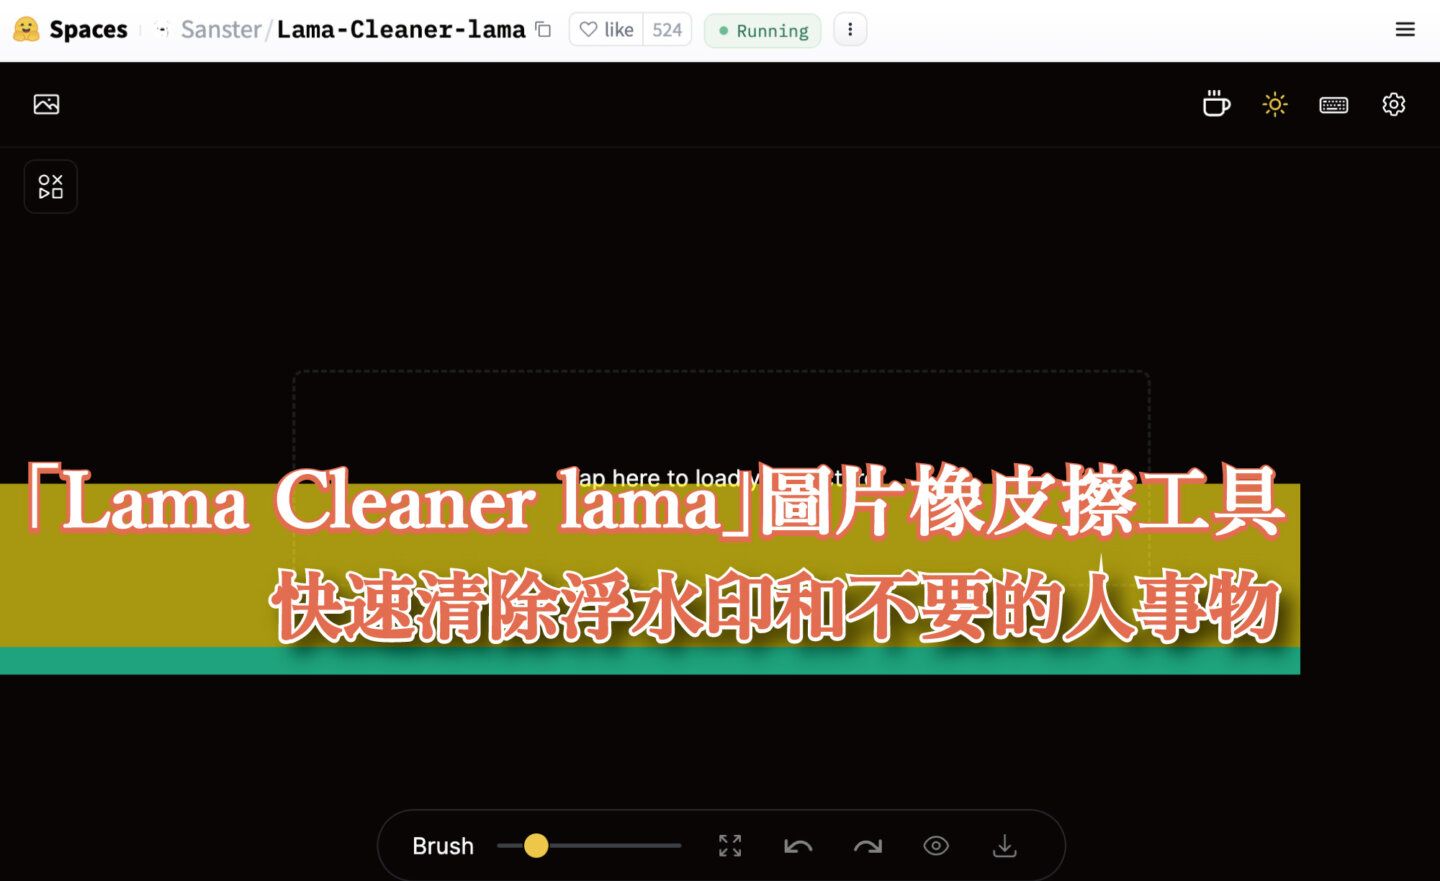 【免費】「Lama Cleaner lama」AI 全自動圖片橡皮擦工具，快速清除浮水印和不要的人事物